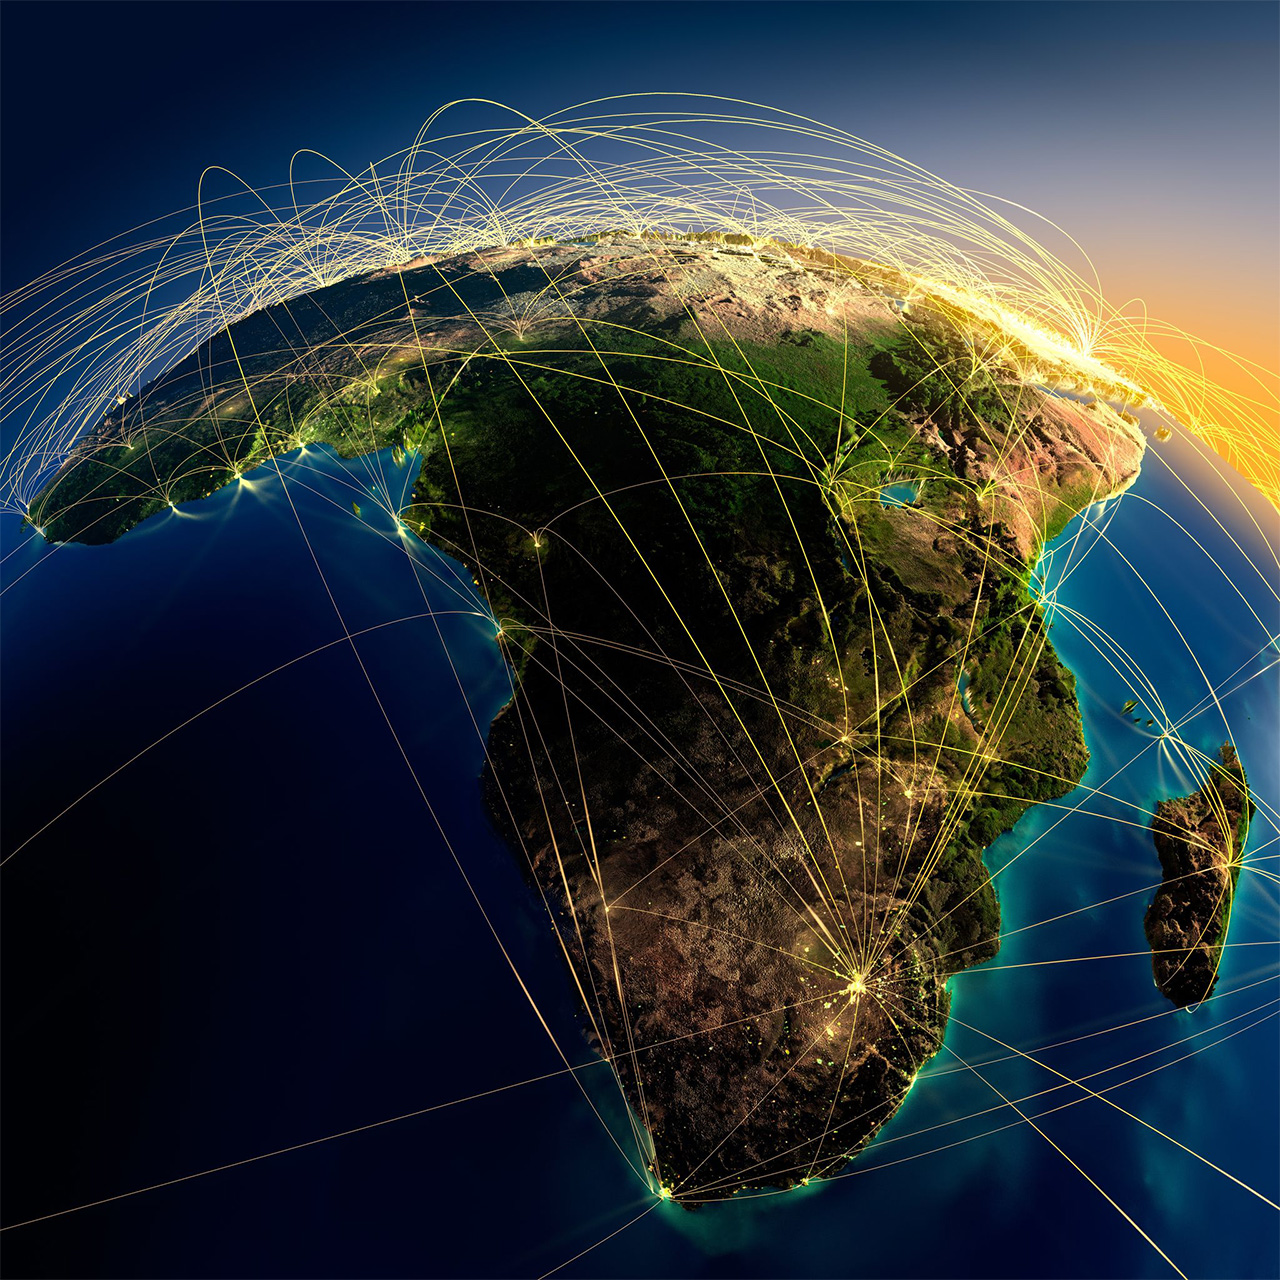 寺久保さんは、「アフリカでは『産業革命』を経ずに『情報革命』が起きた」と話す